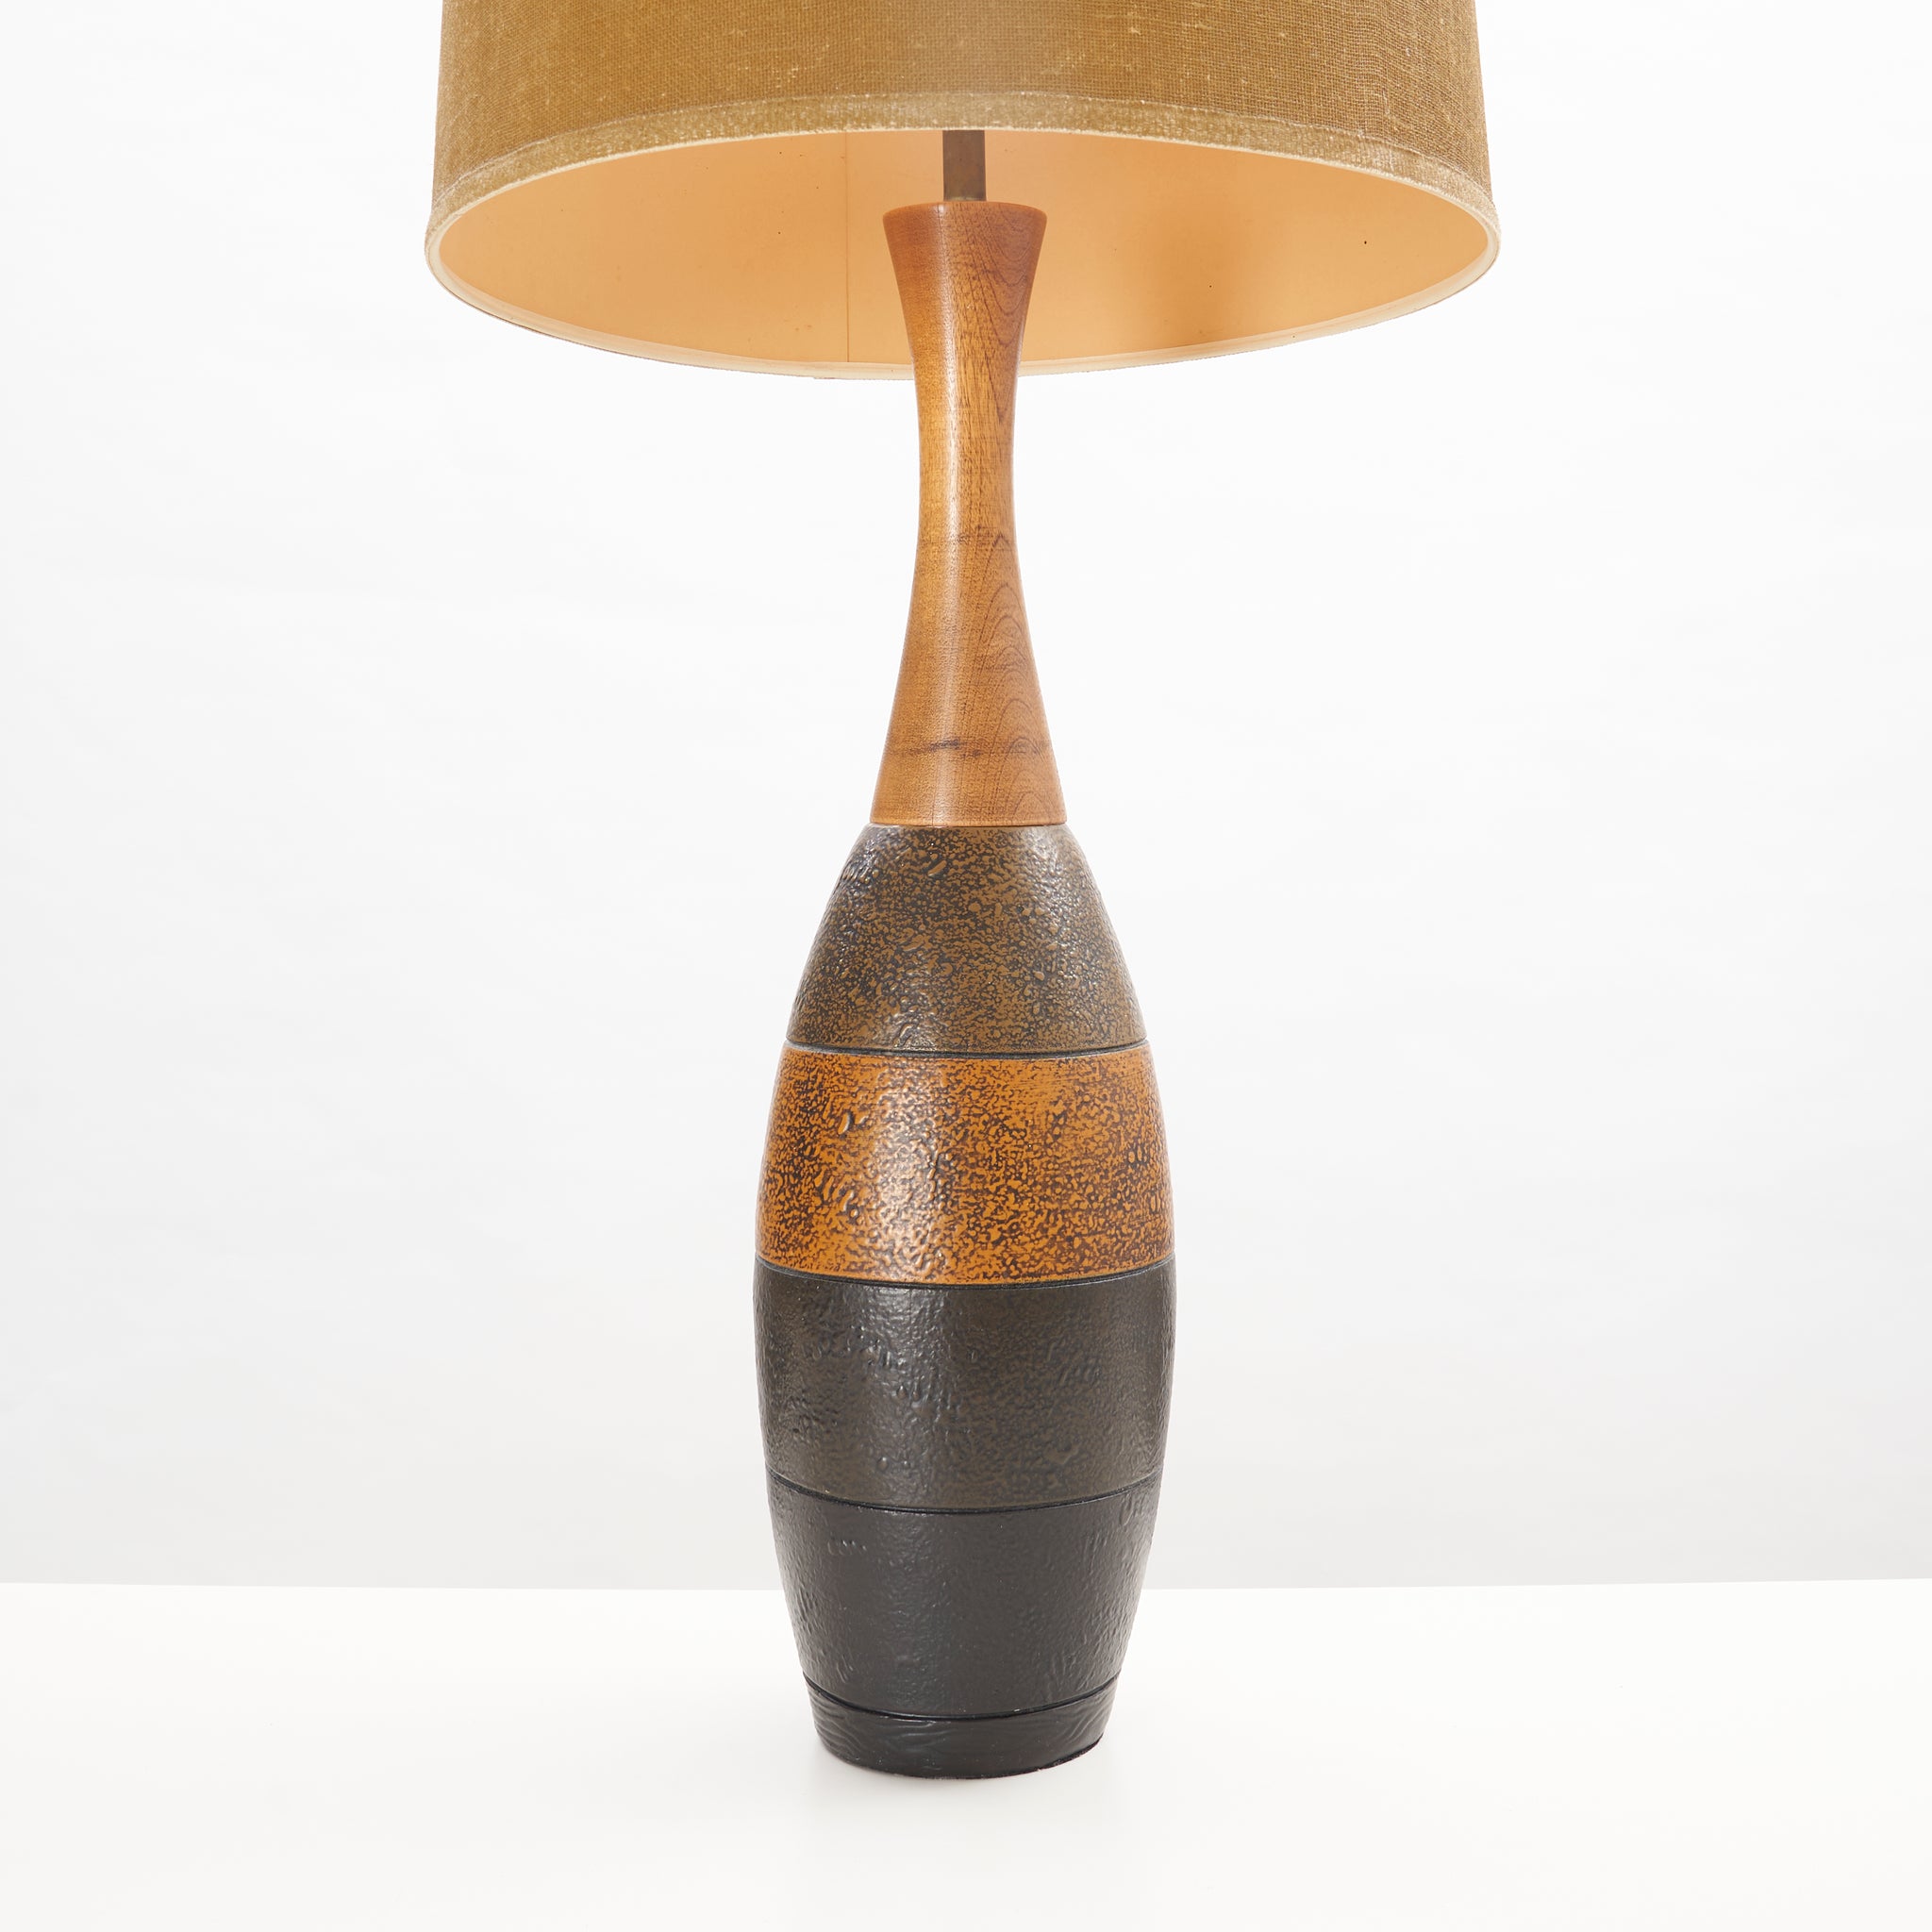 Vintage Ceramic & Wood Table Lamp